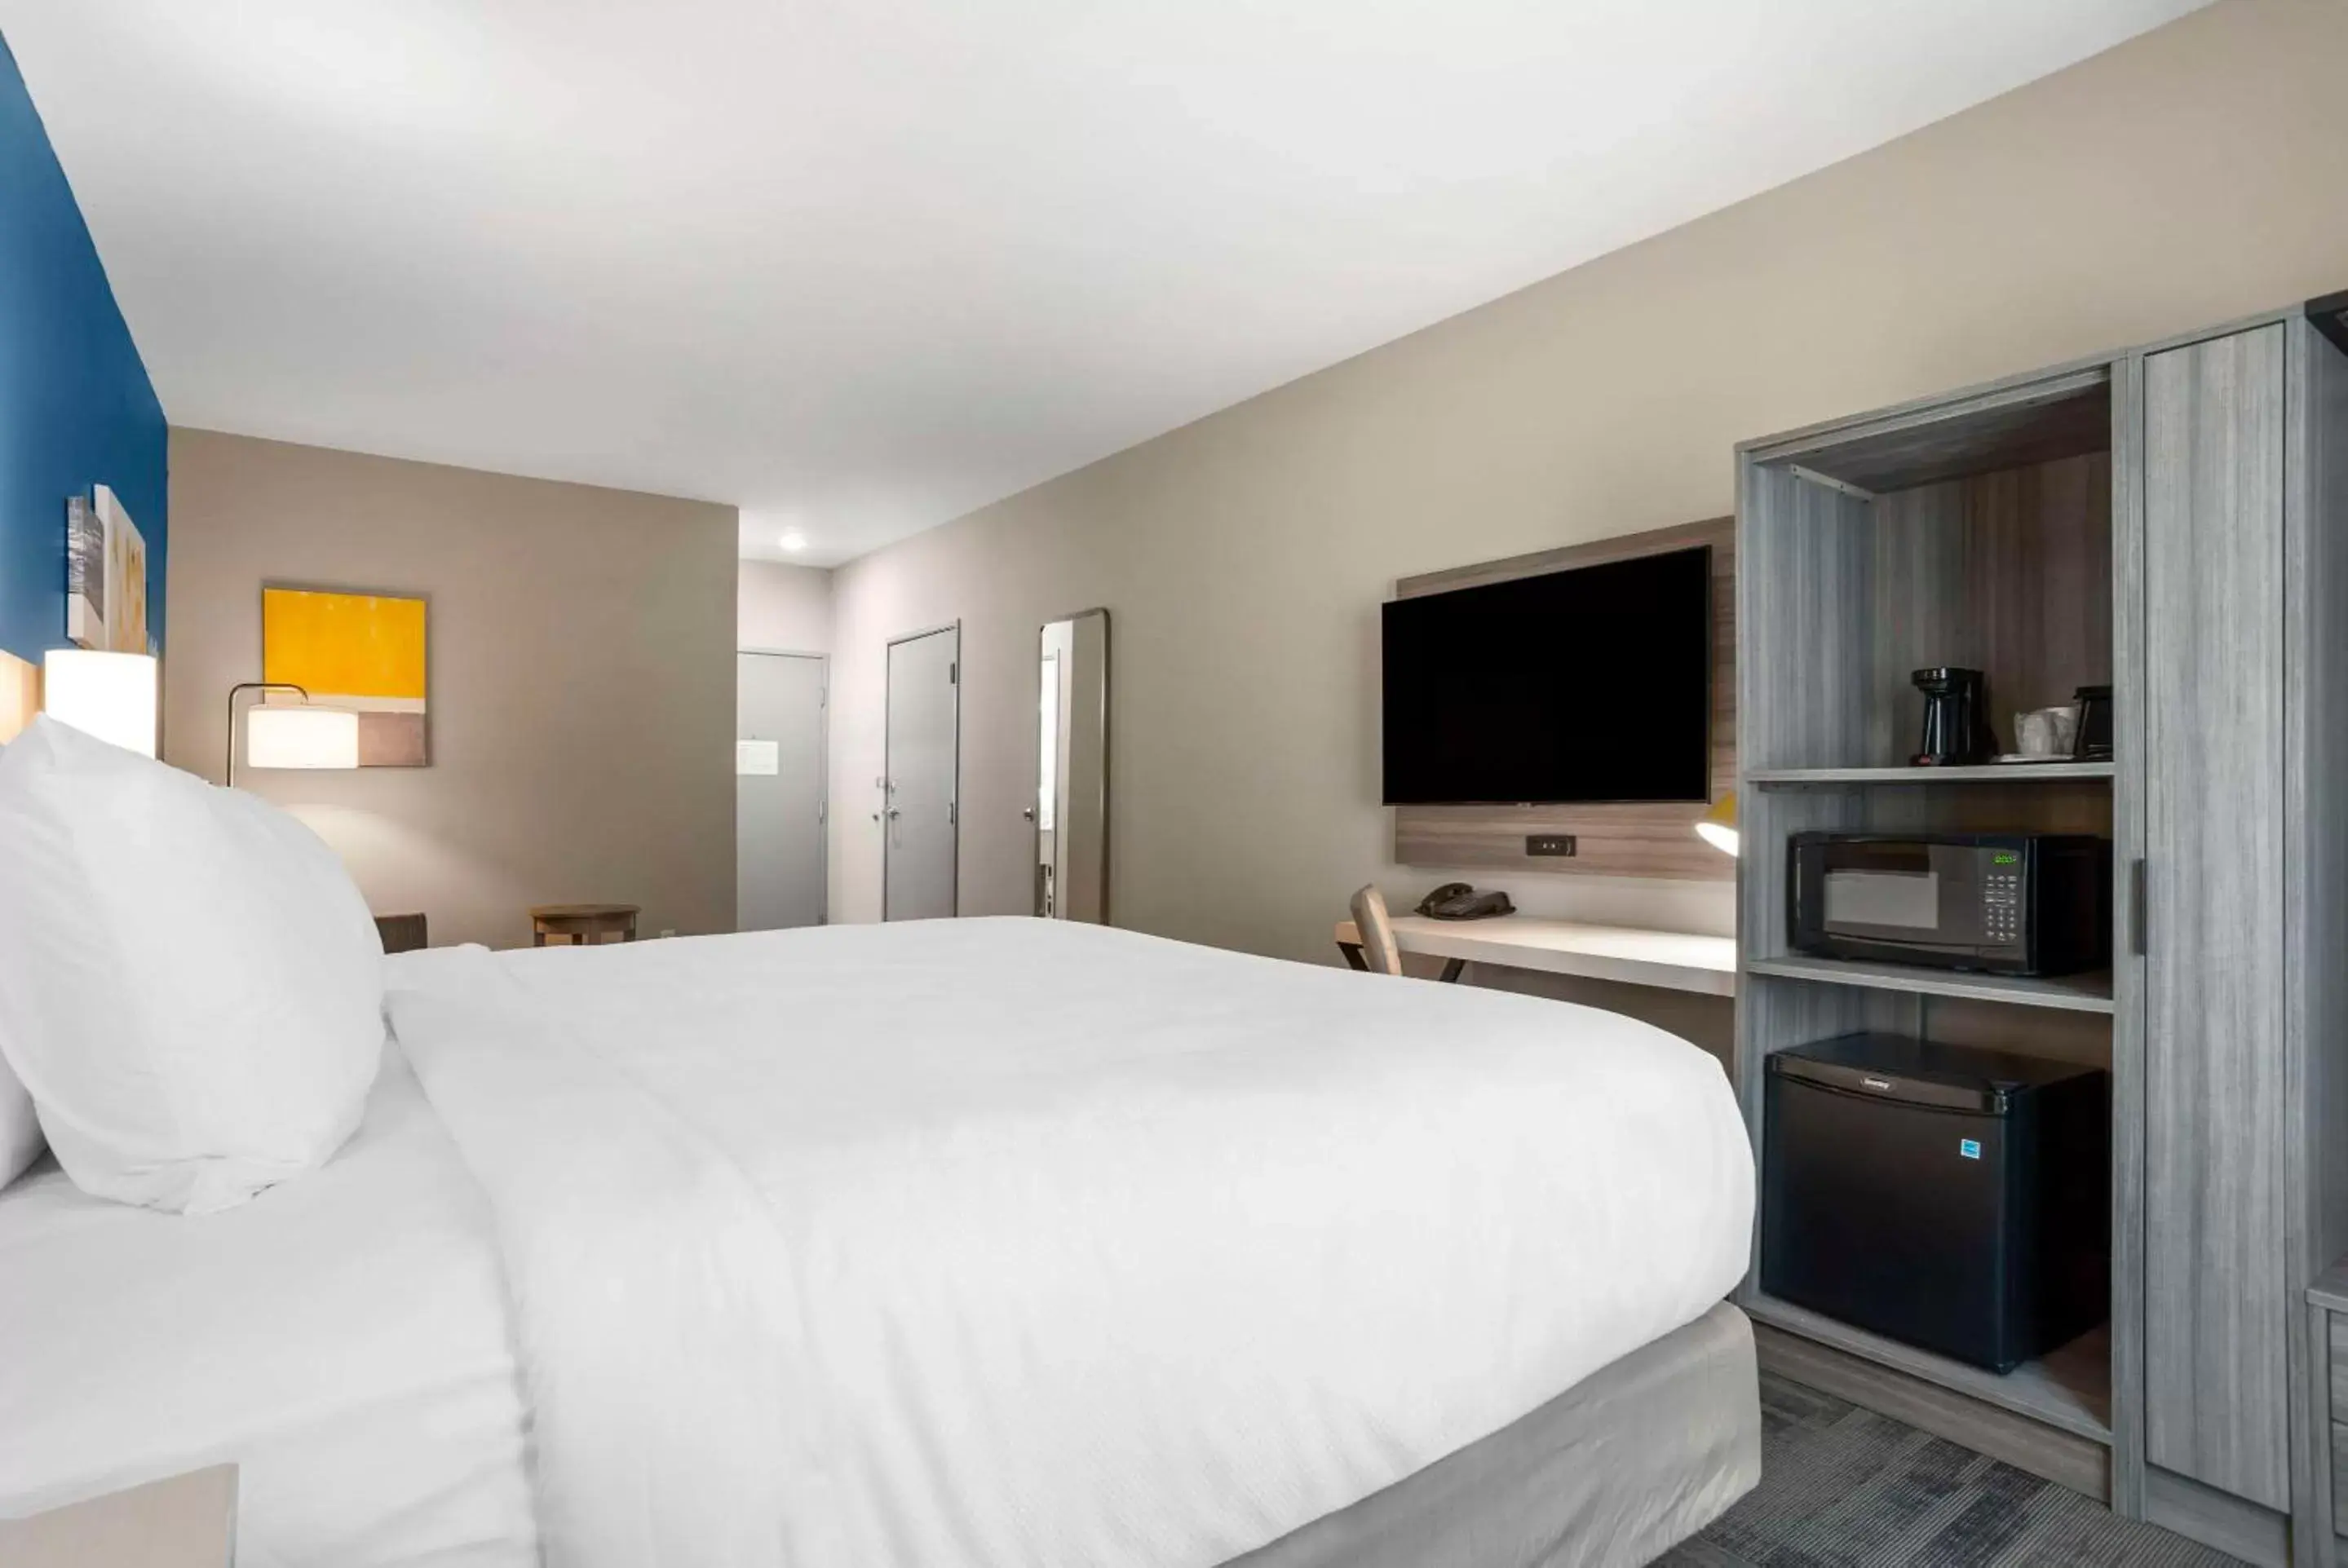 Bedroom, Bed in Comfort Inn & Suites